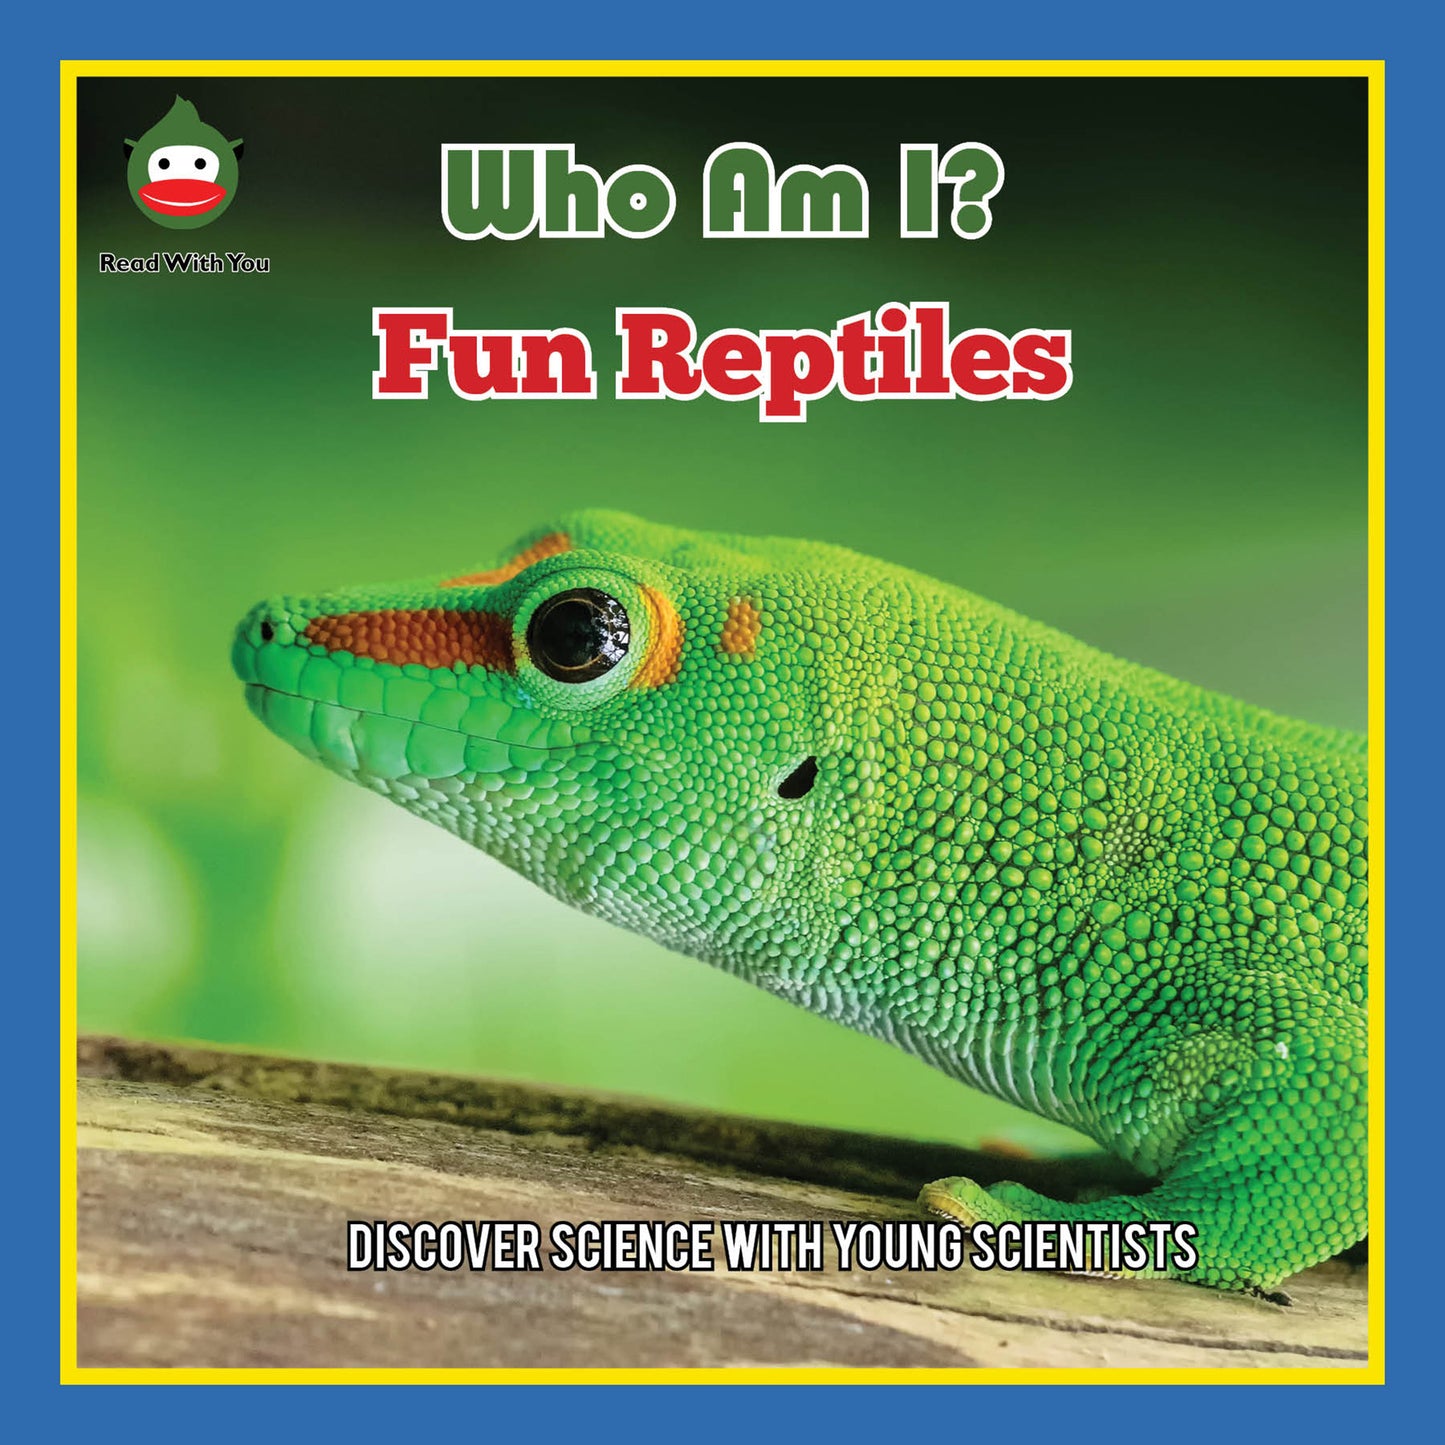 Fun Reptiles